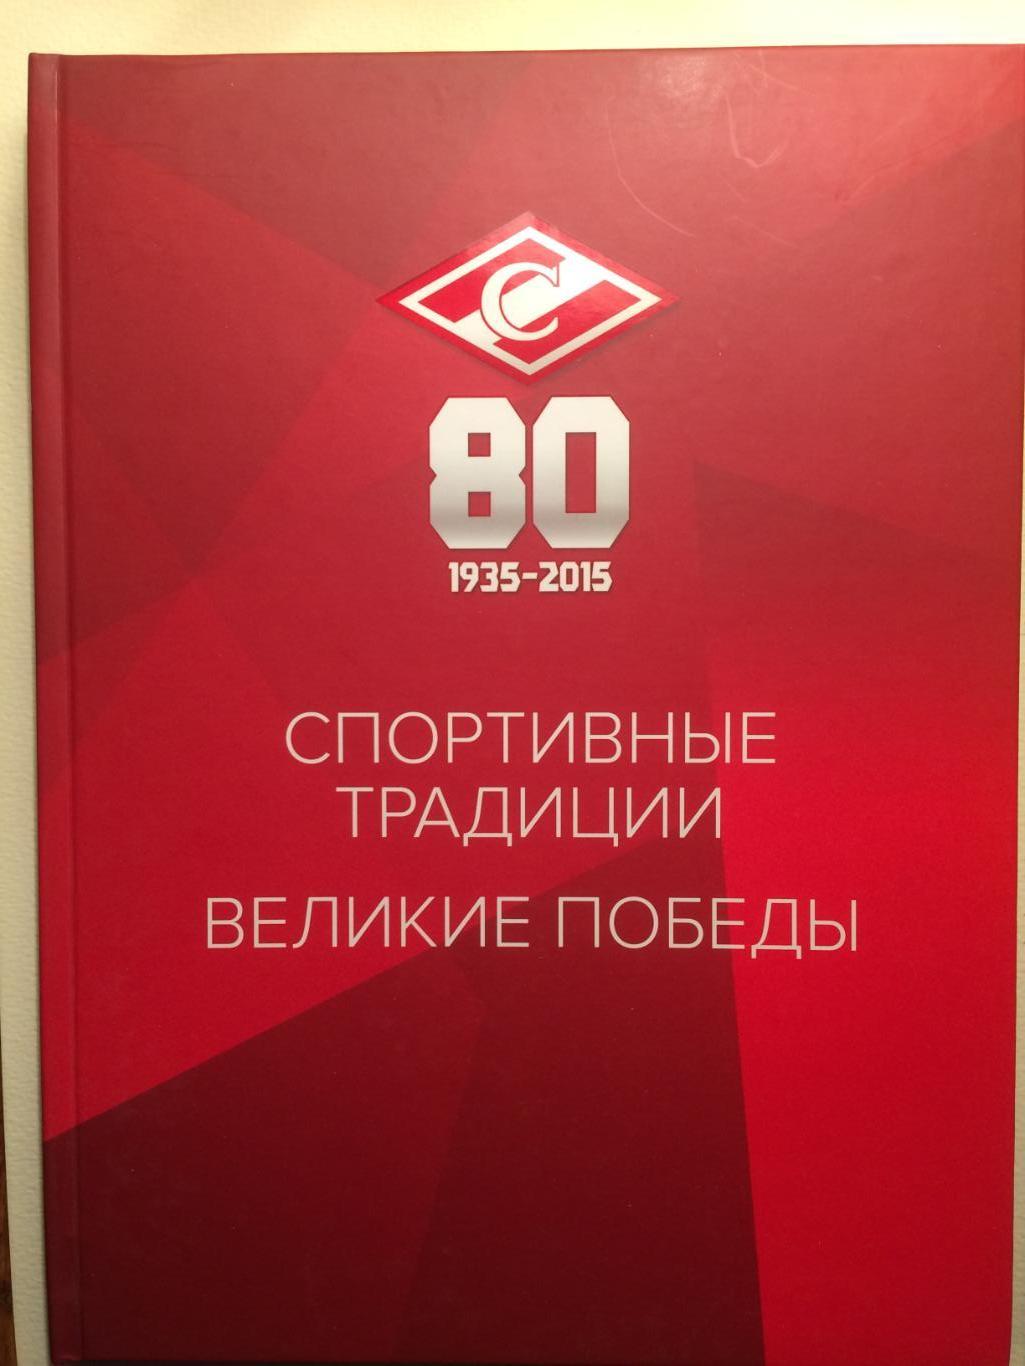 Фотоальбом Спартак - 80 Великие победы 1935-2015